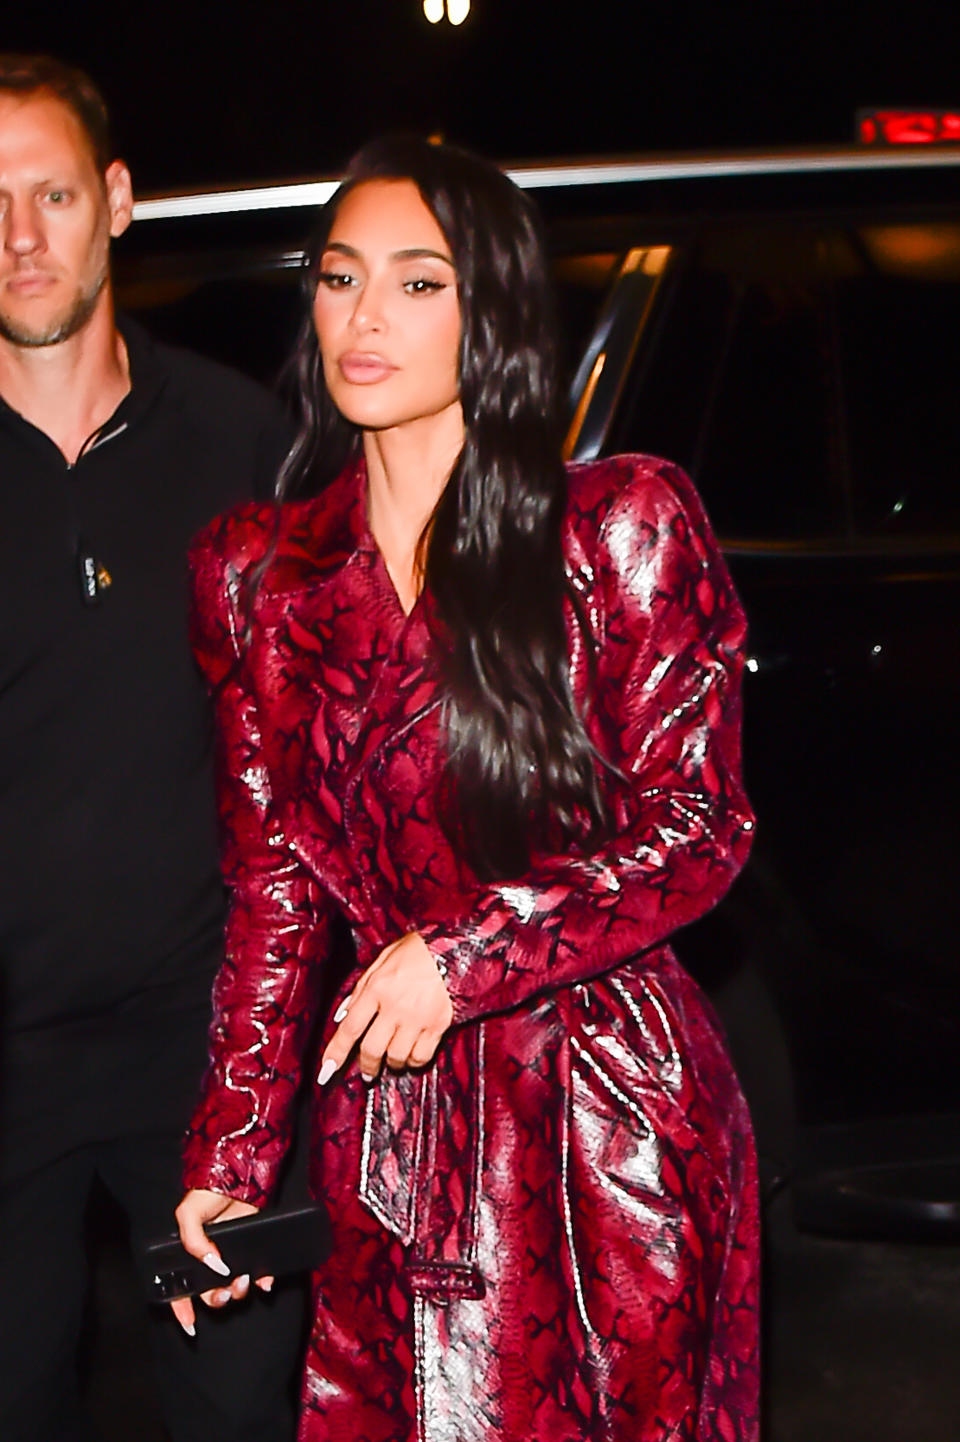 Kim Kardashian at an event